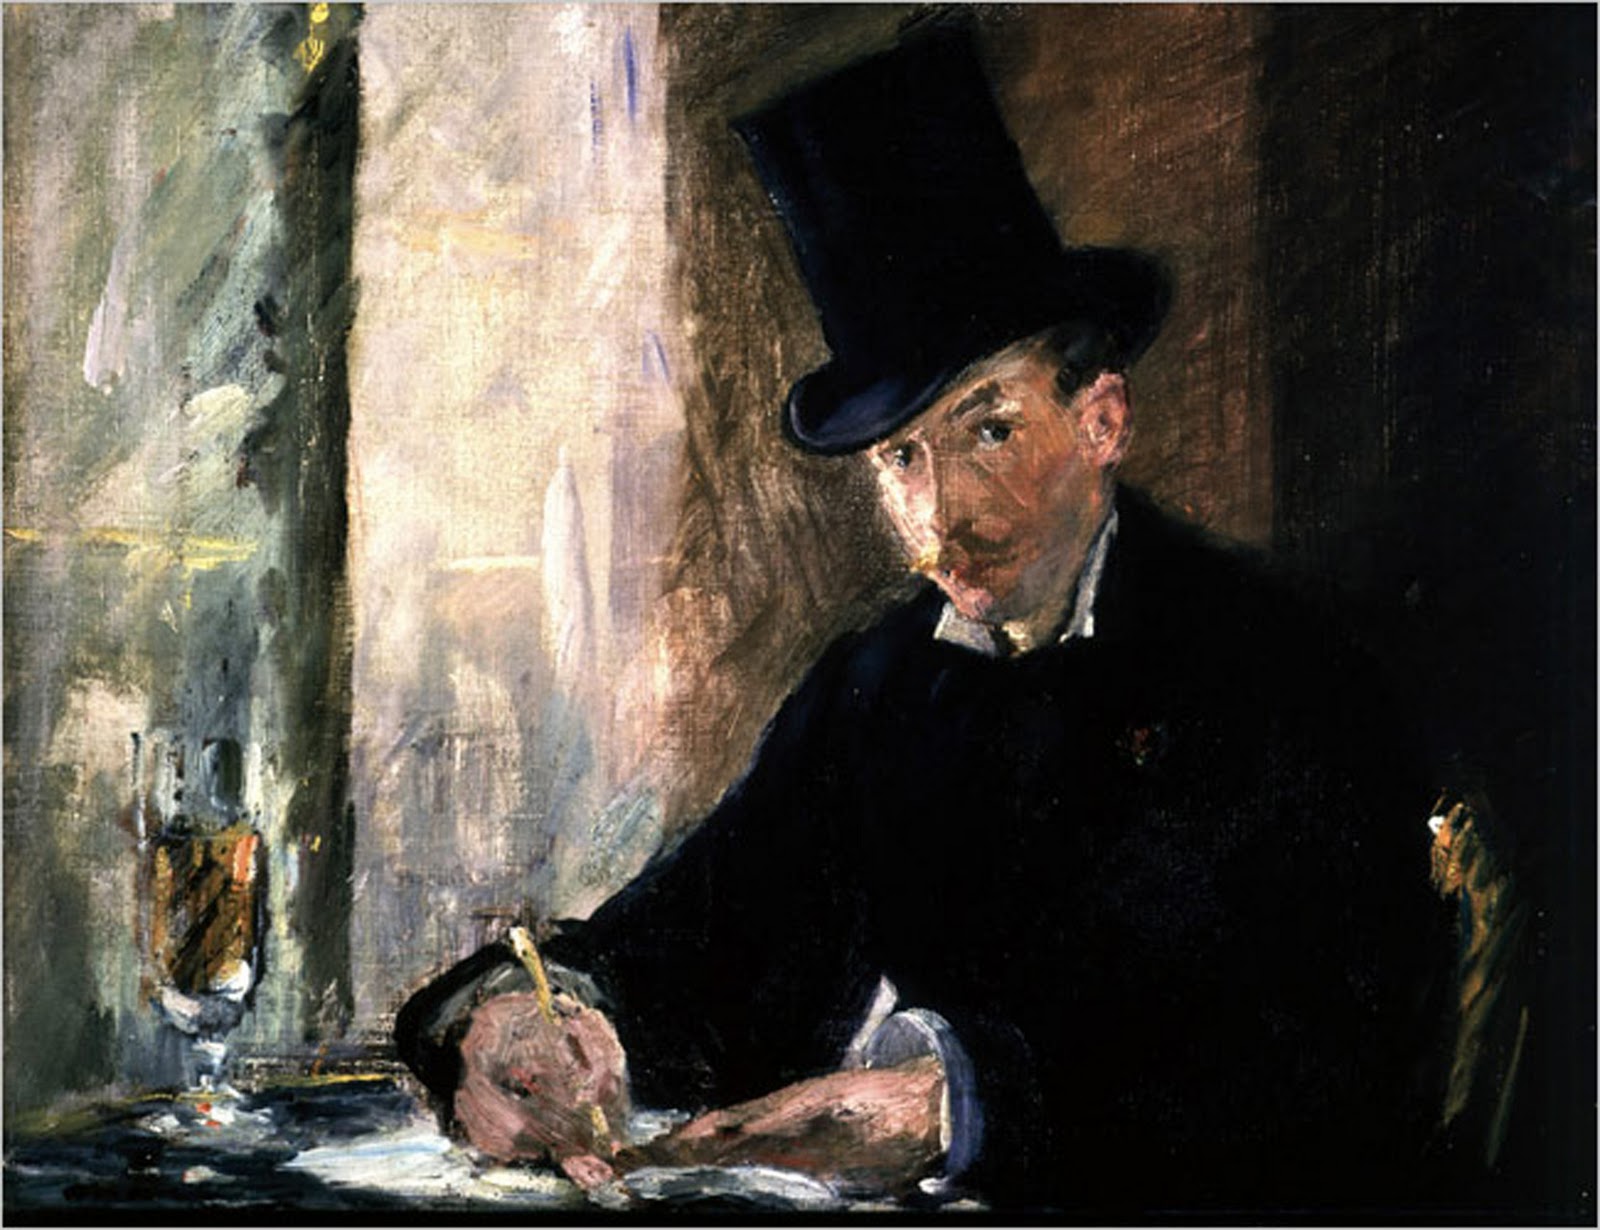 Chez Tortoni by Édouard Manet - c. 1879 - 26 x 34 cm Stolen